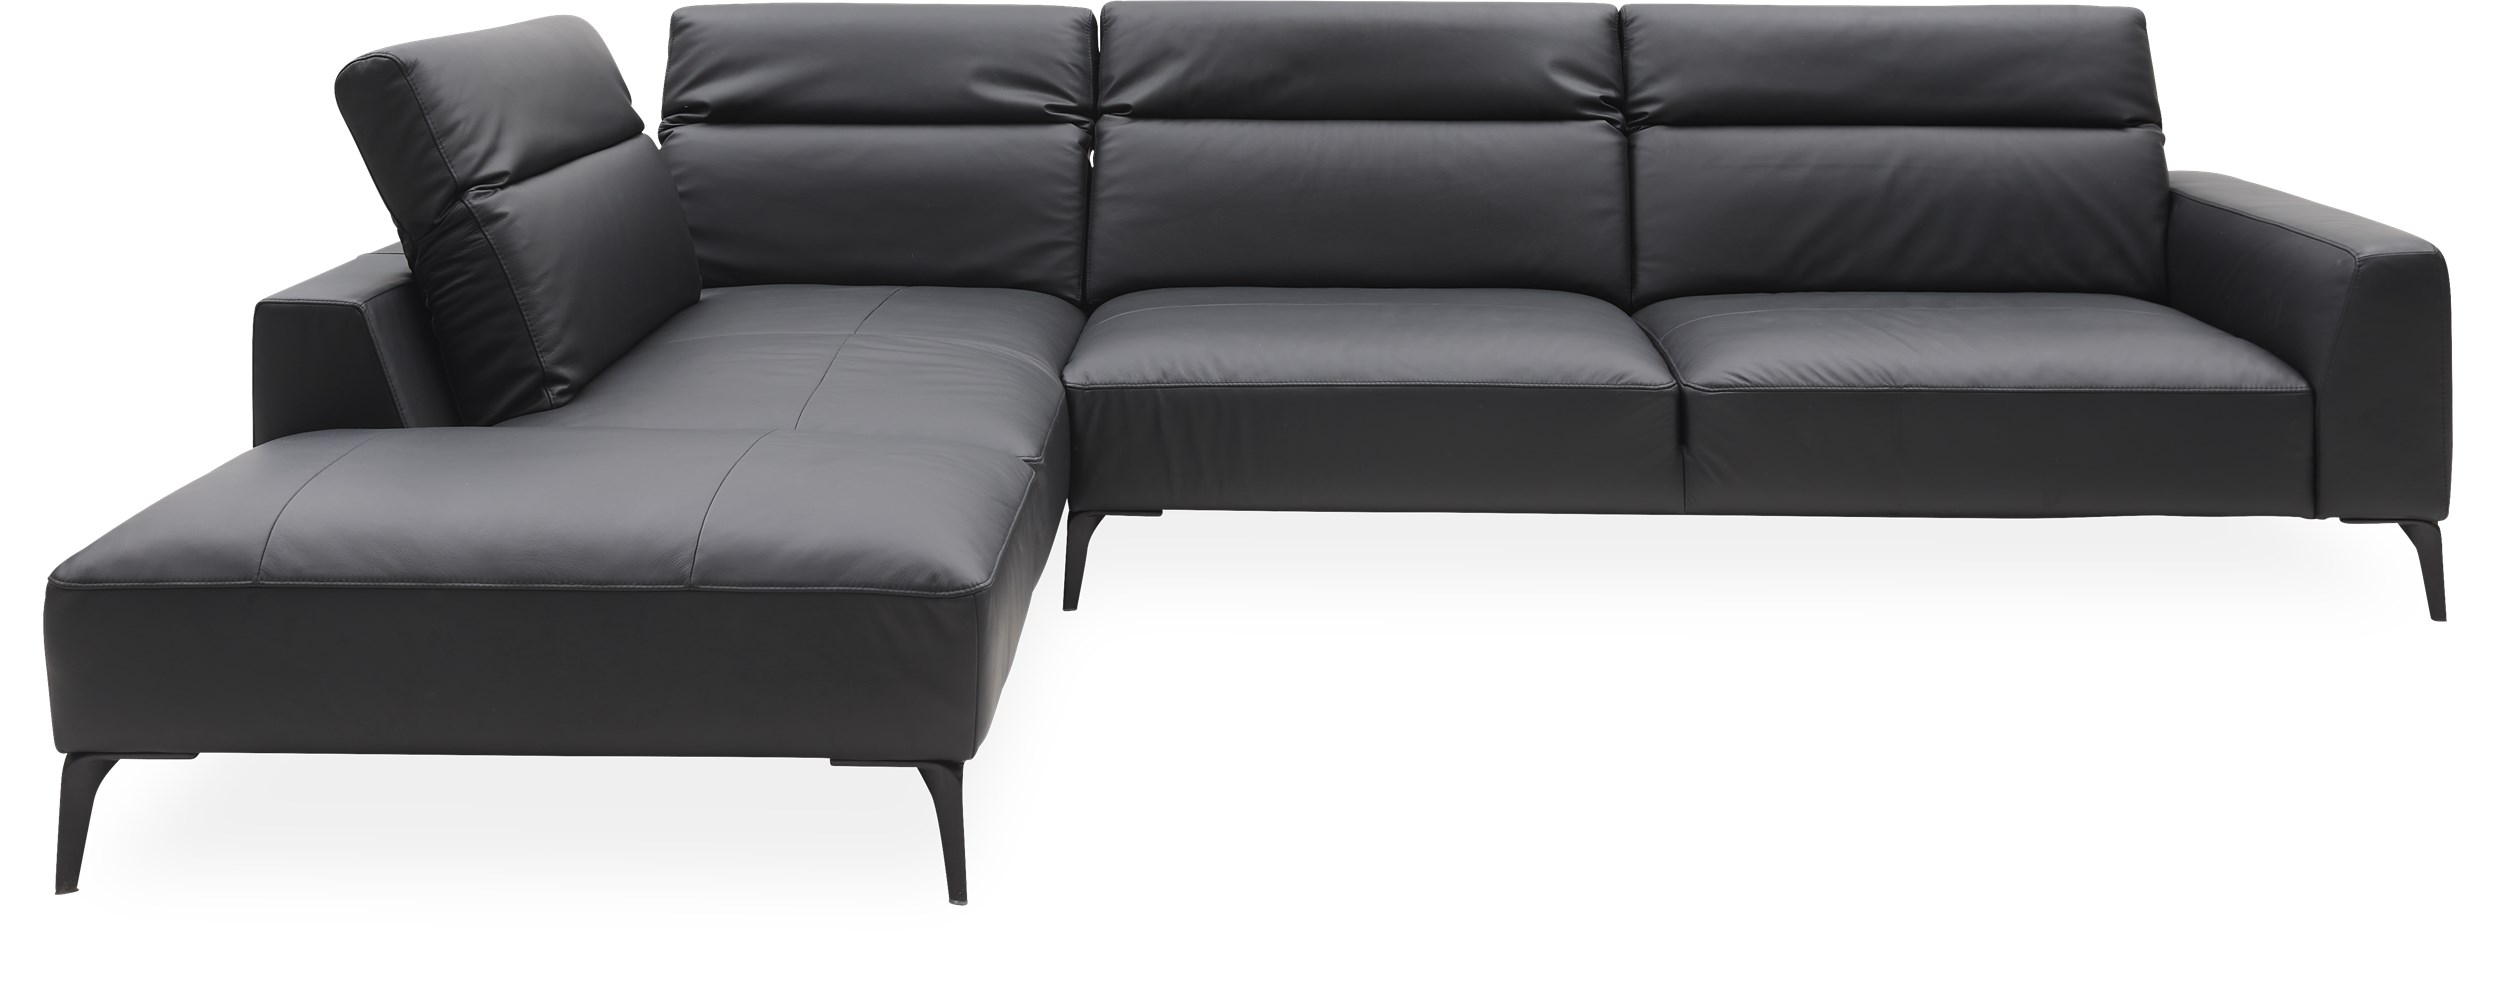 Volanti Sofa med pufafslutning - Omaha 0730 Ink jet black læder, ben i sort metal og Koldskum